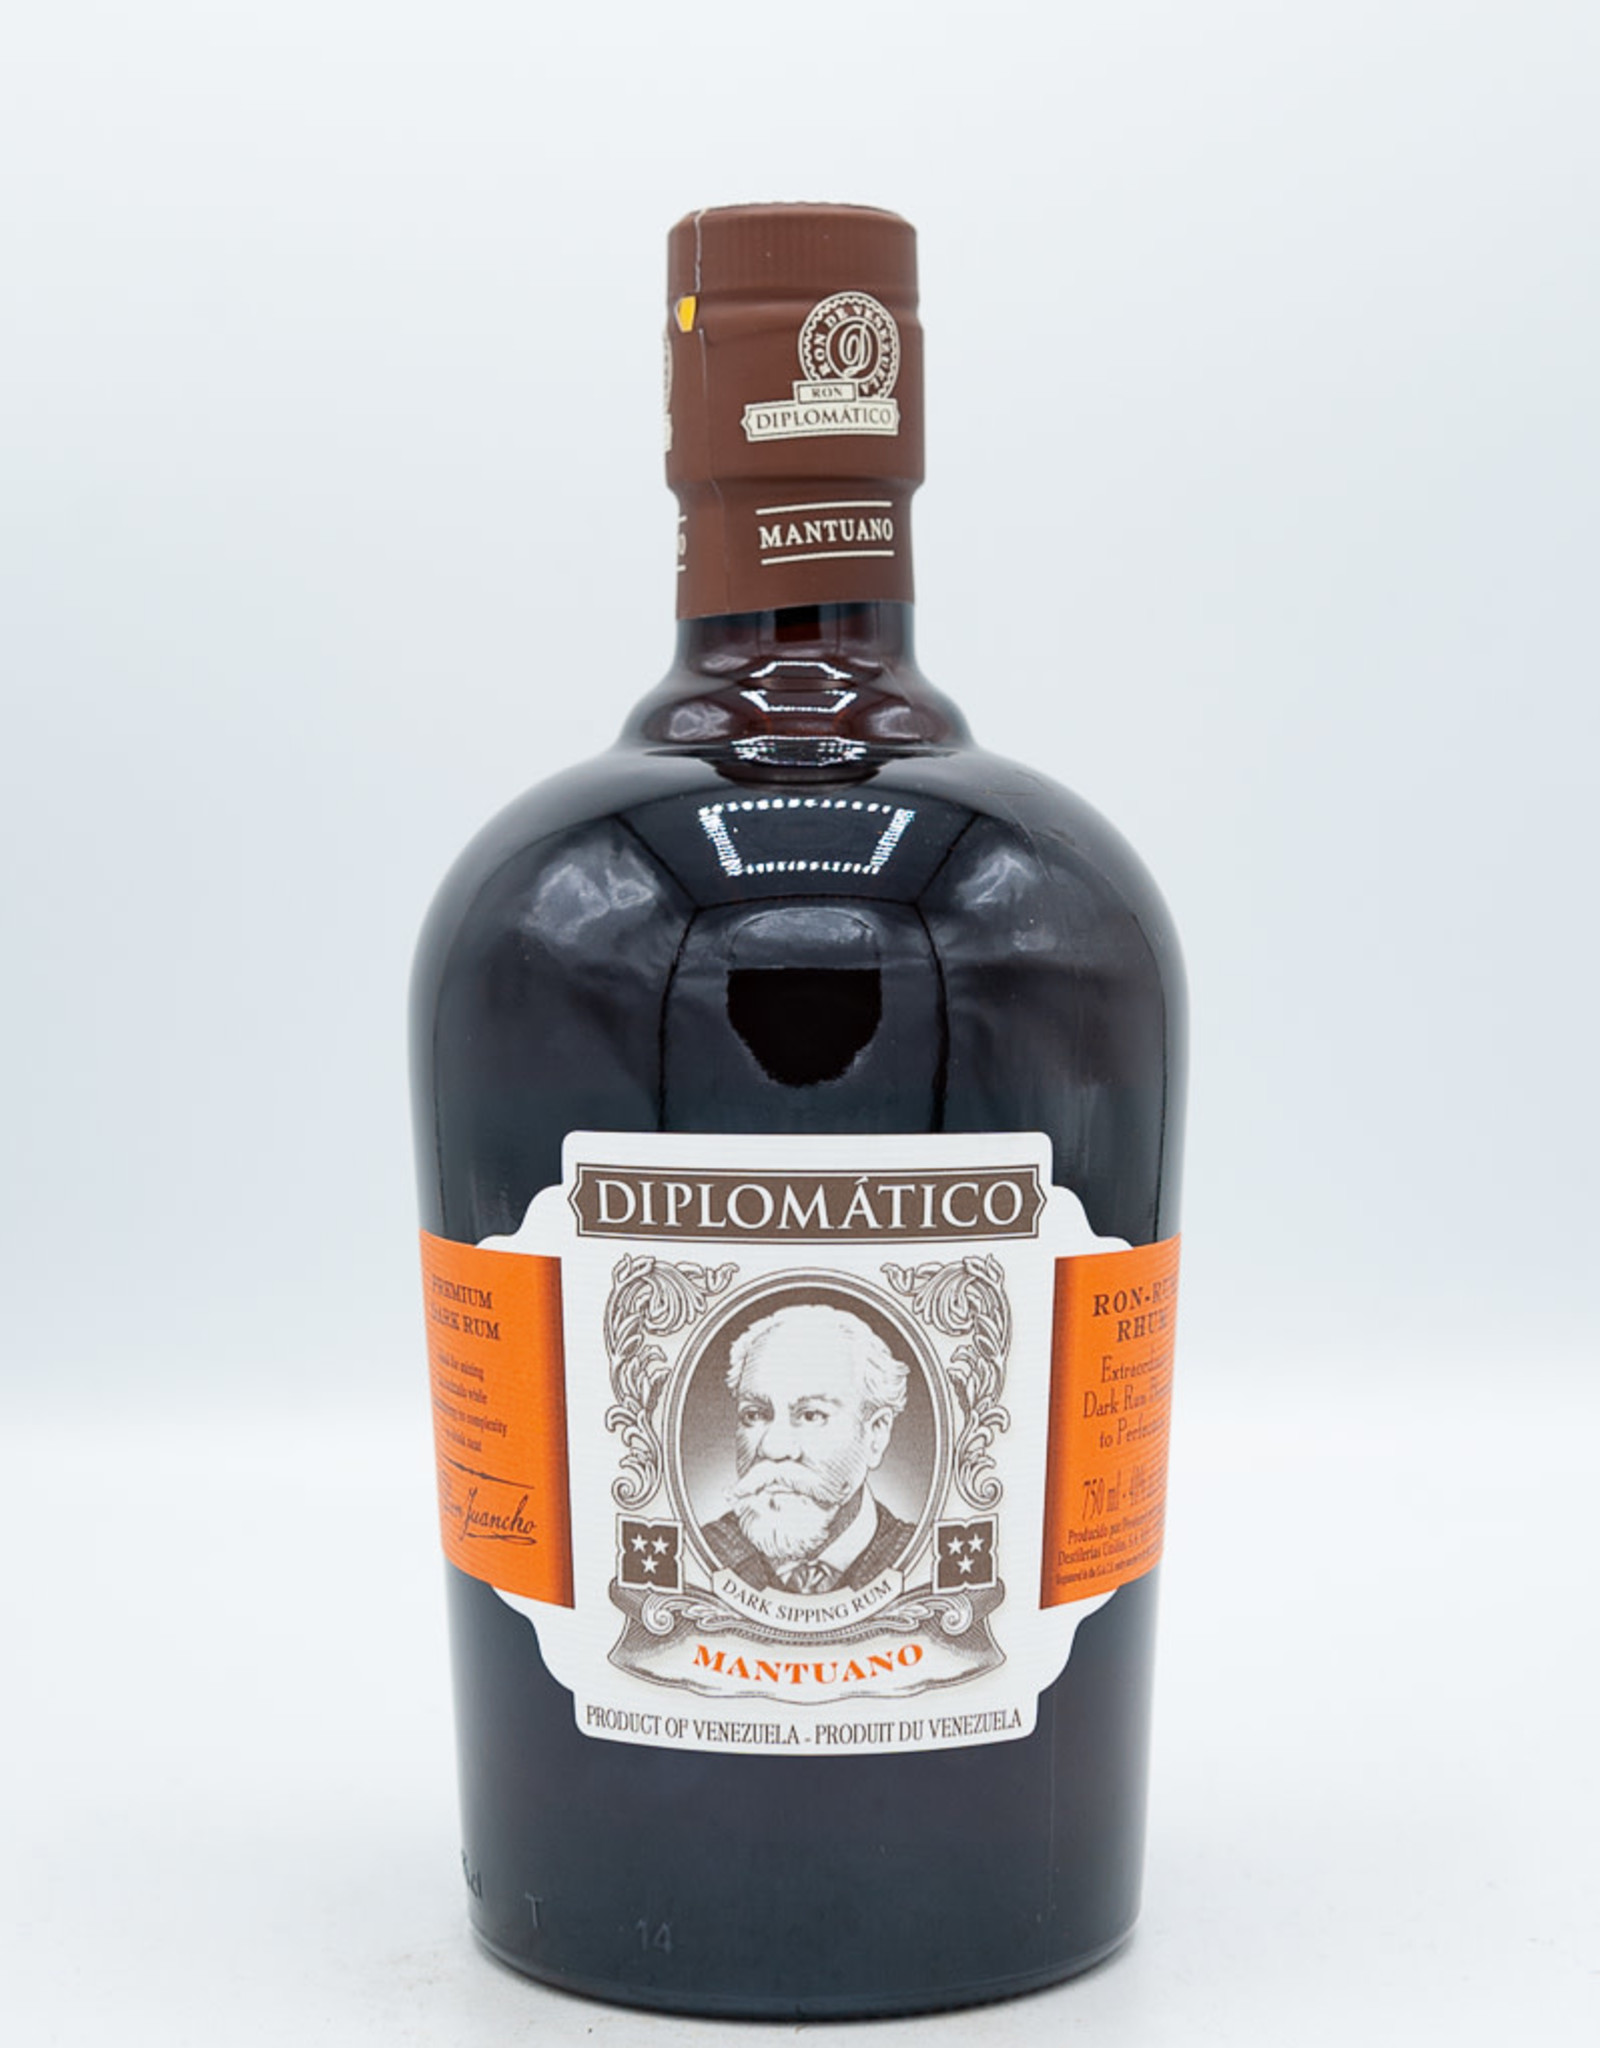 Diplomatico Mantuano Dark Rum